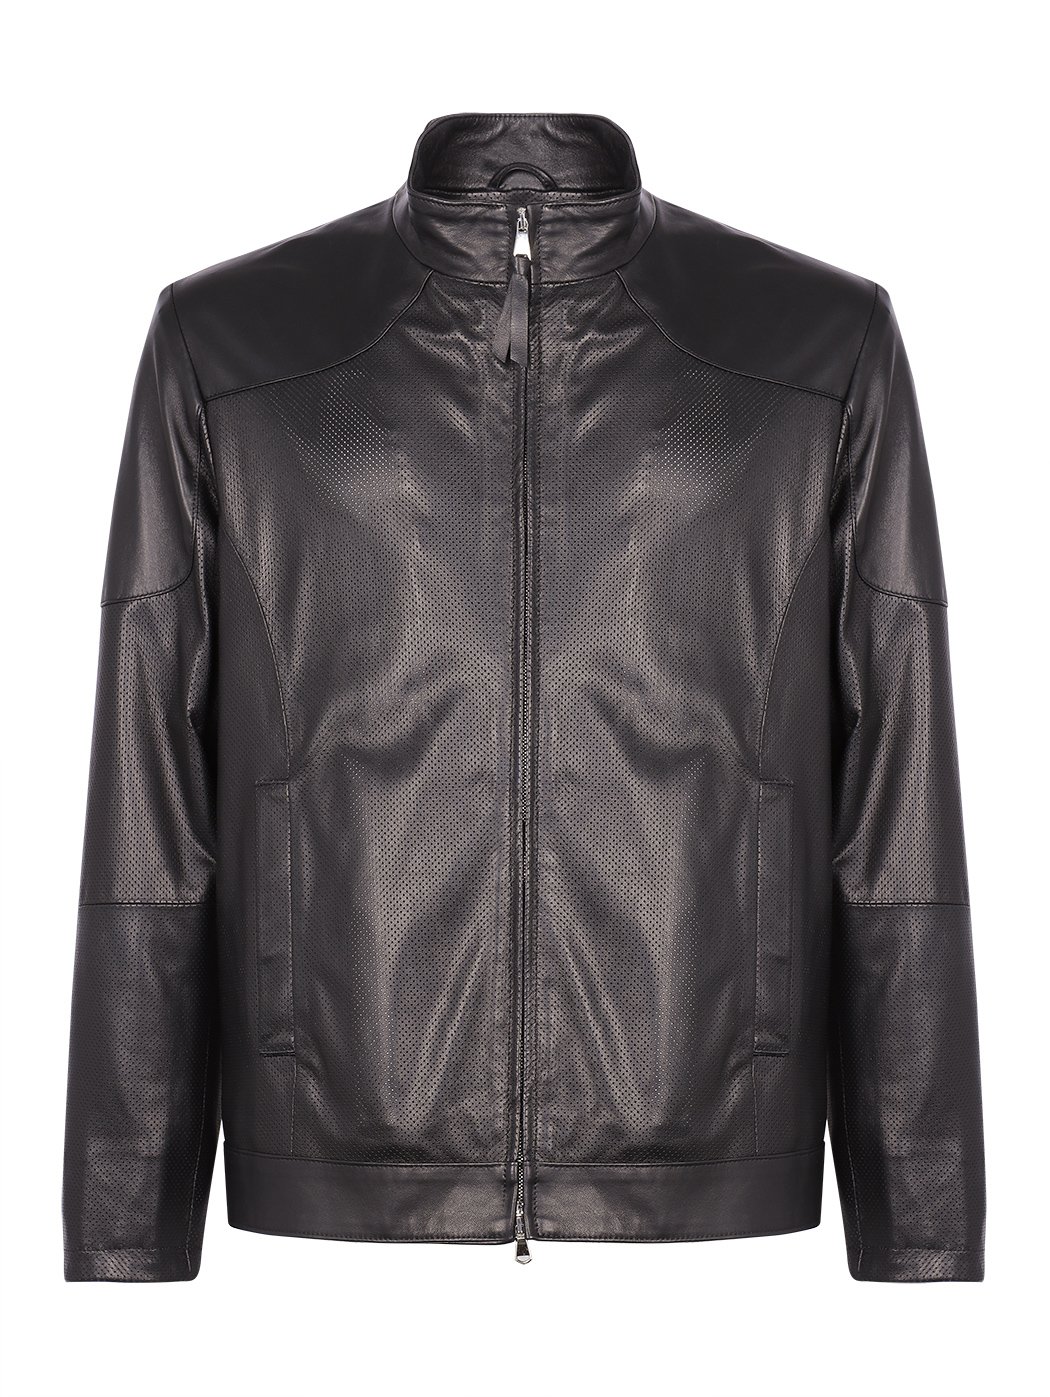 Biker leather jacket 黑色